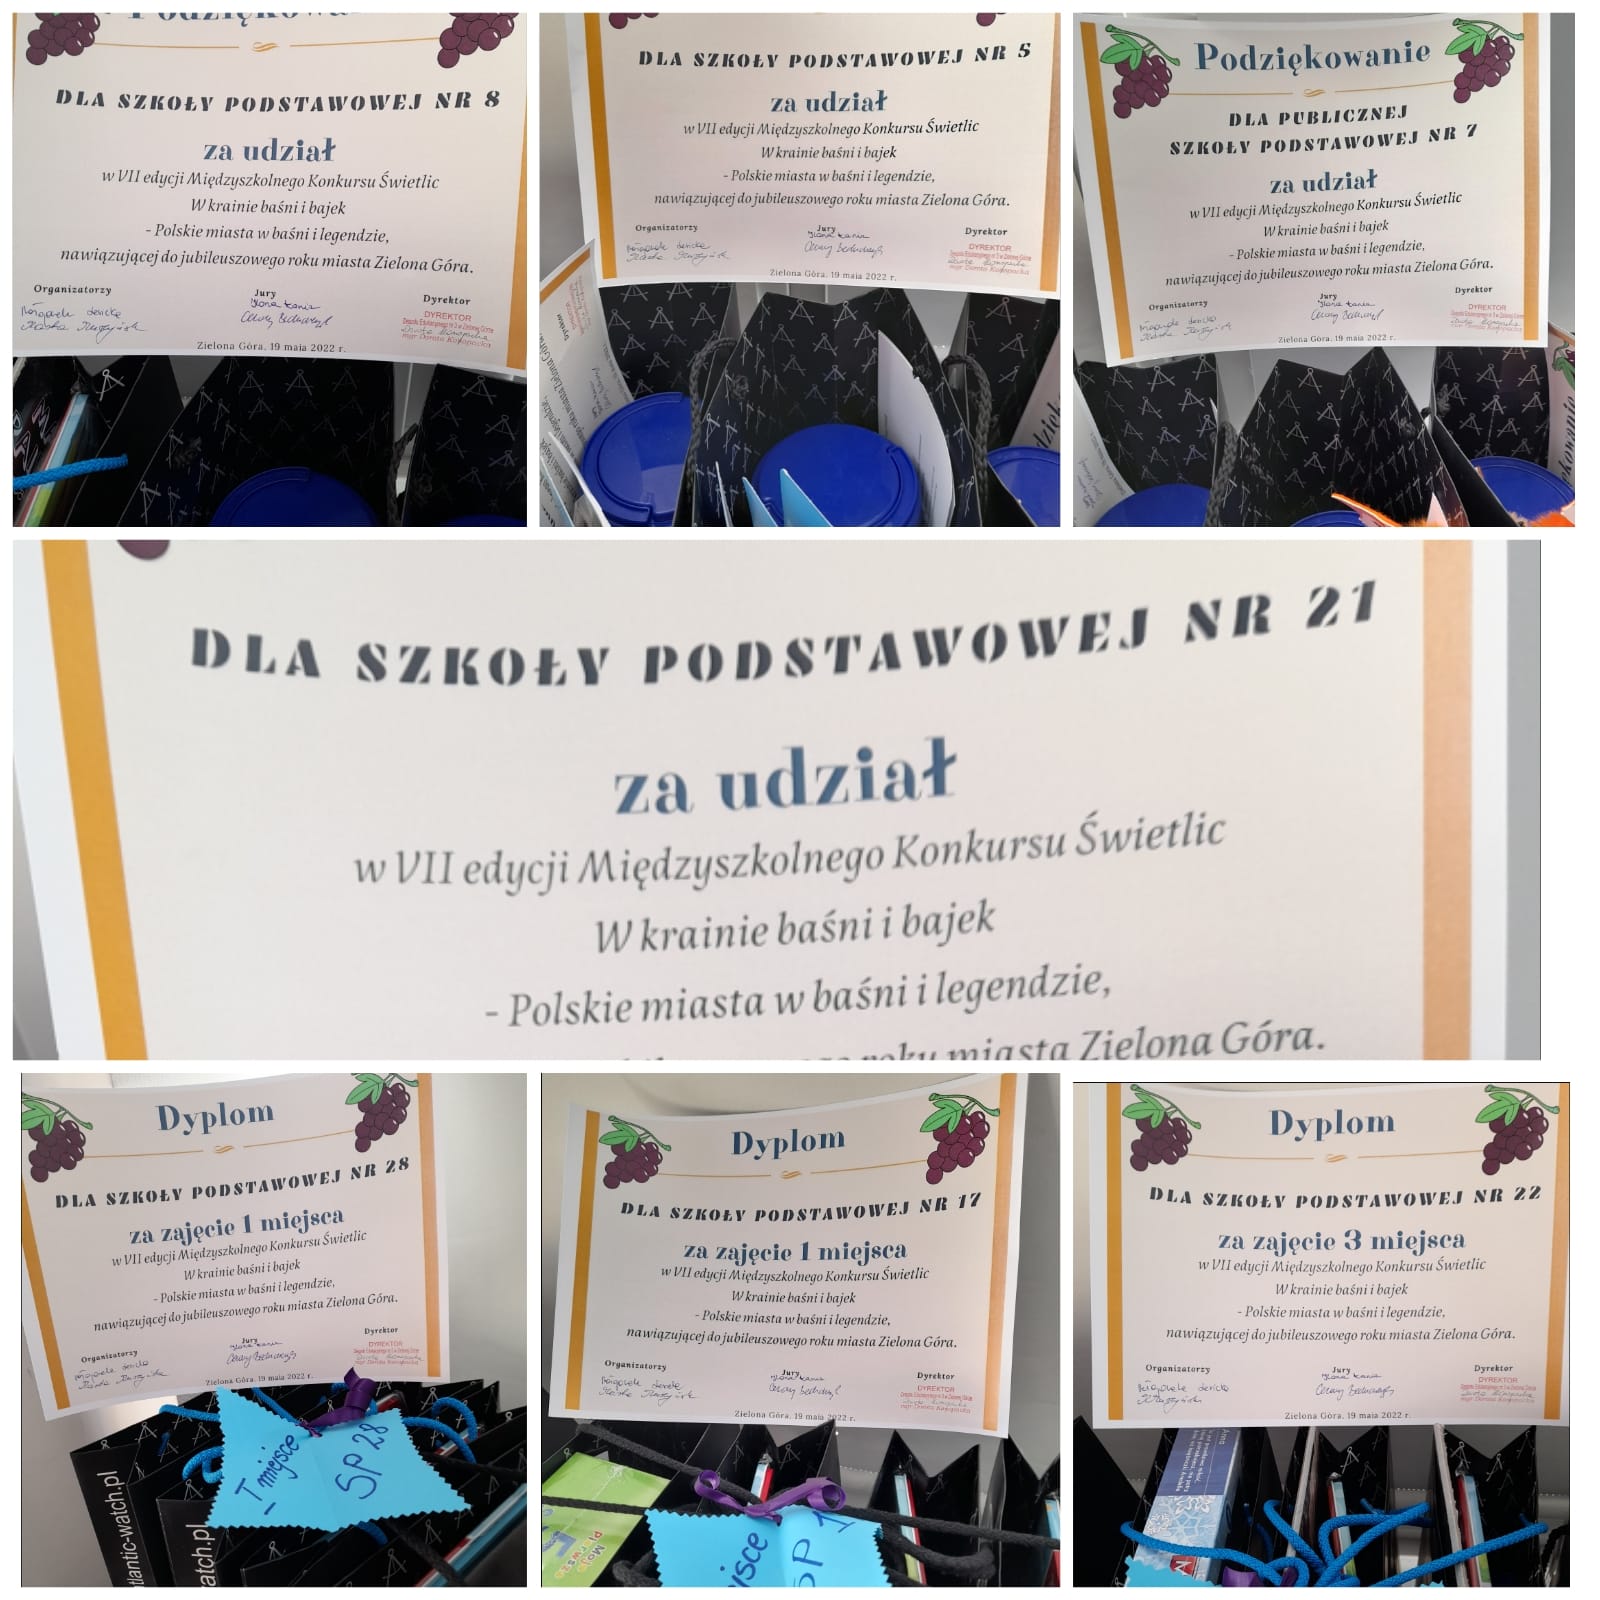 Dyplomy za udział w konkursie W krainie baśni i bajek